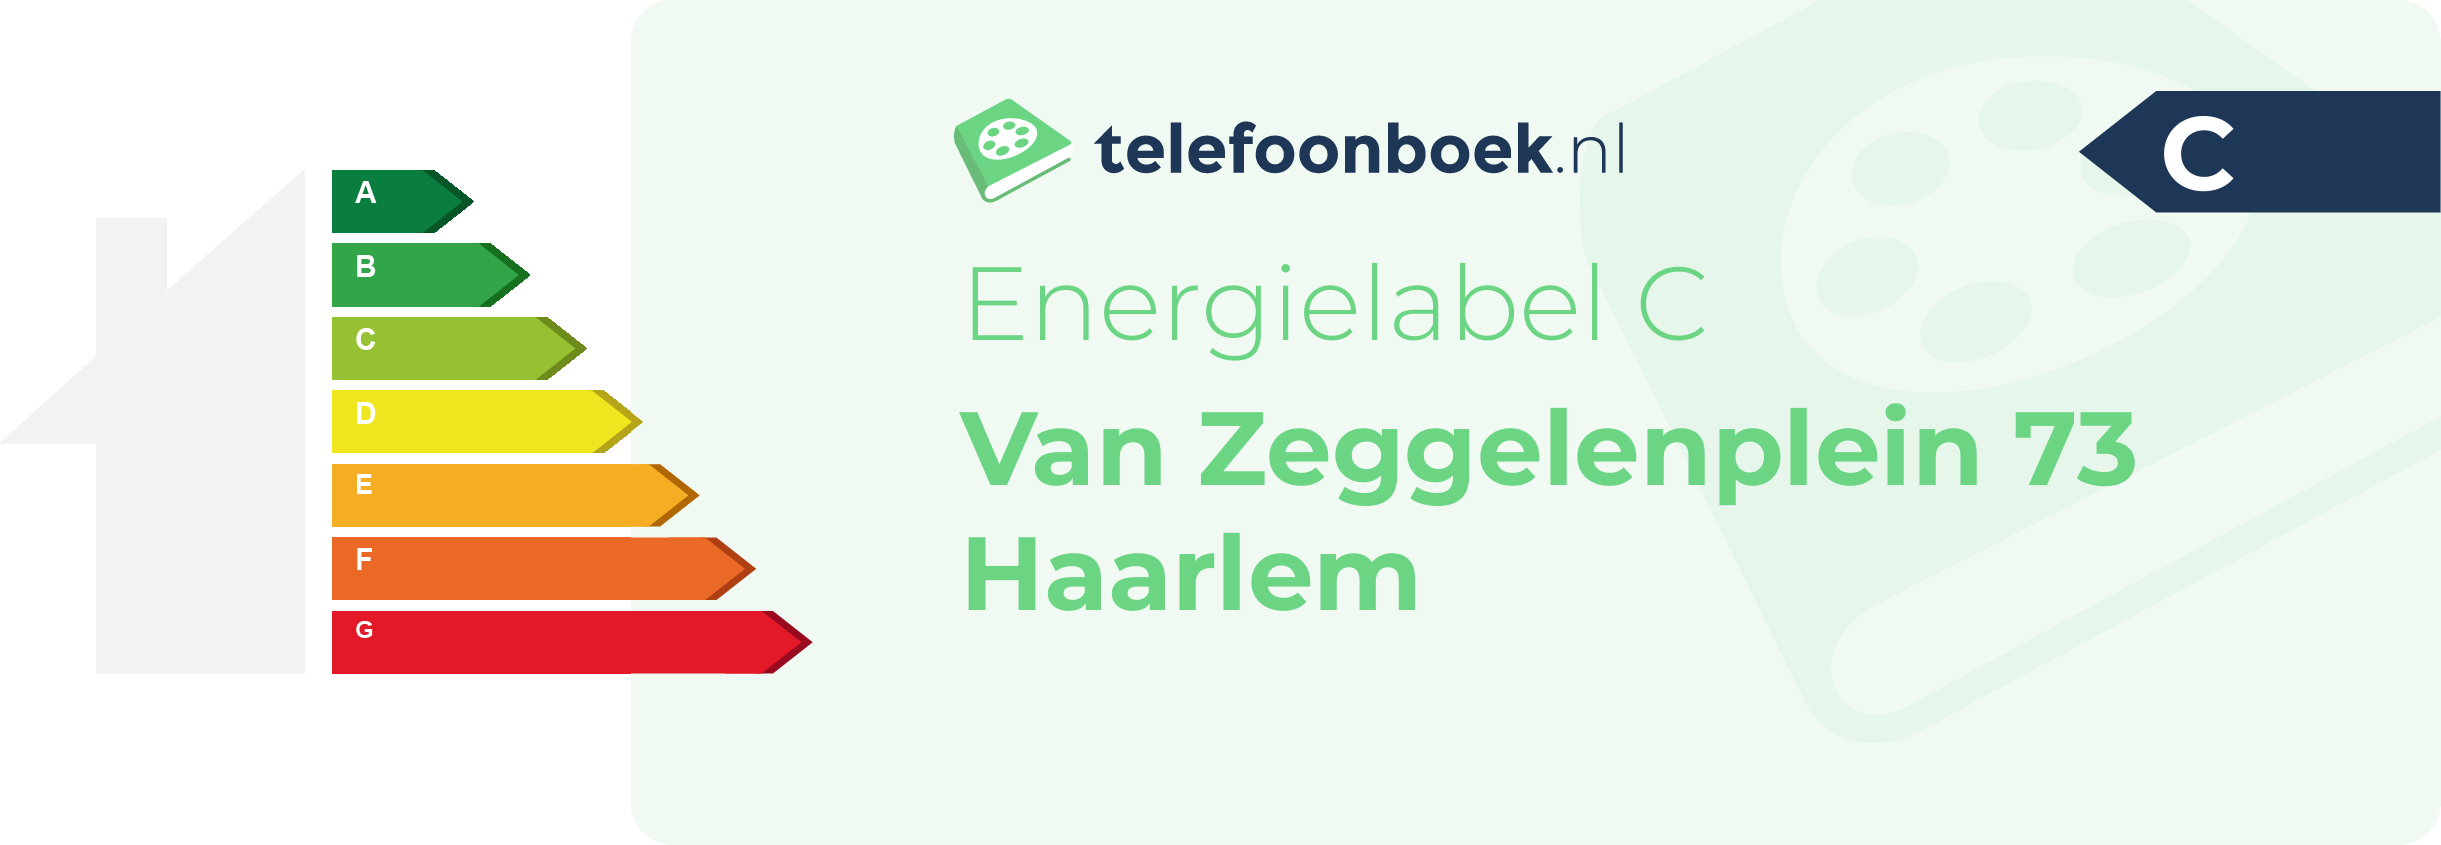 Energielabel Van Zeggelenplein 73 Haarlem